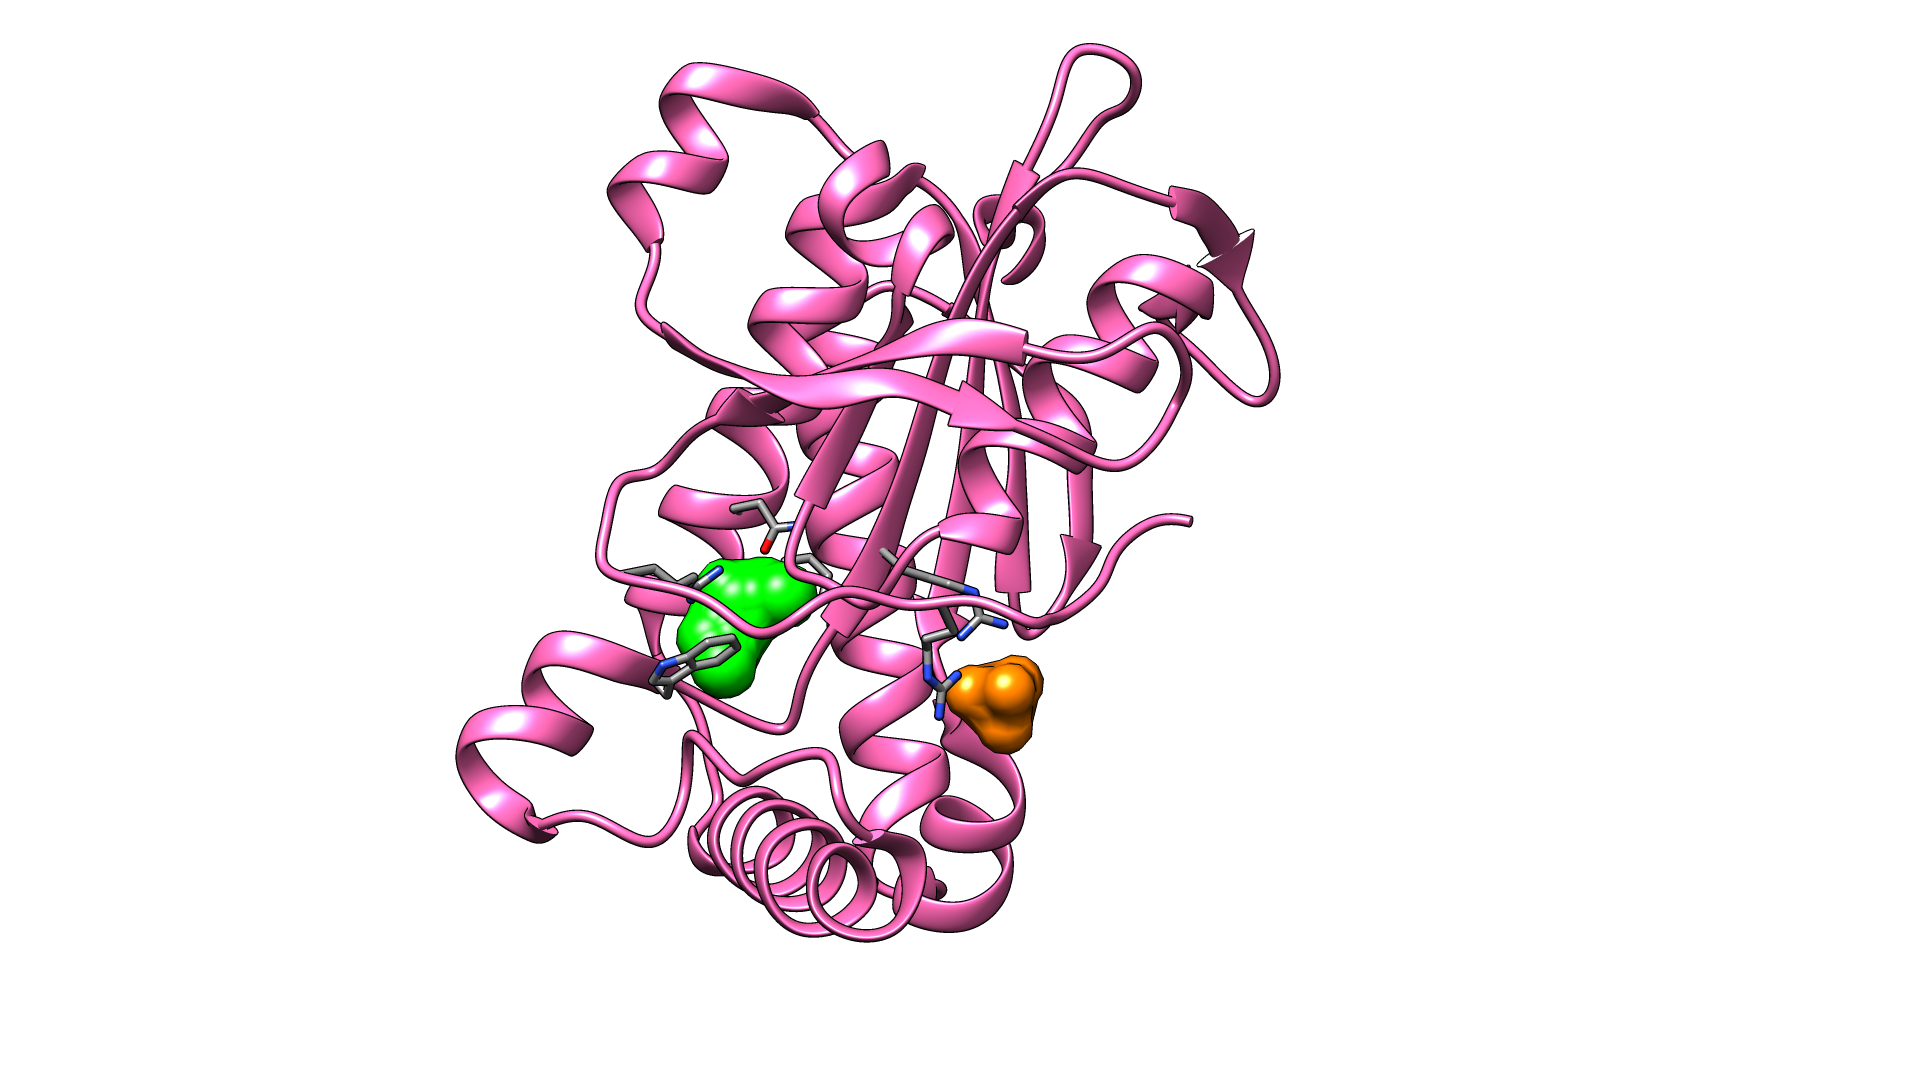 Modulation of adenylate cyclase